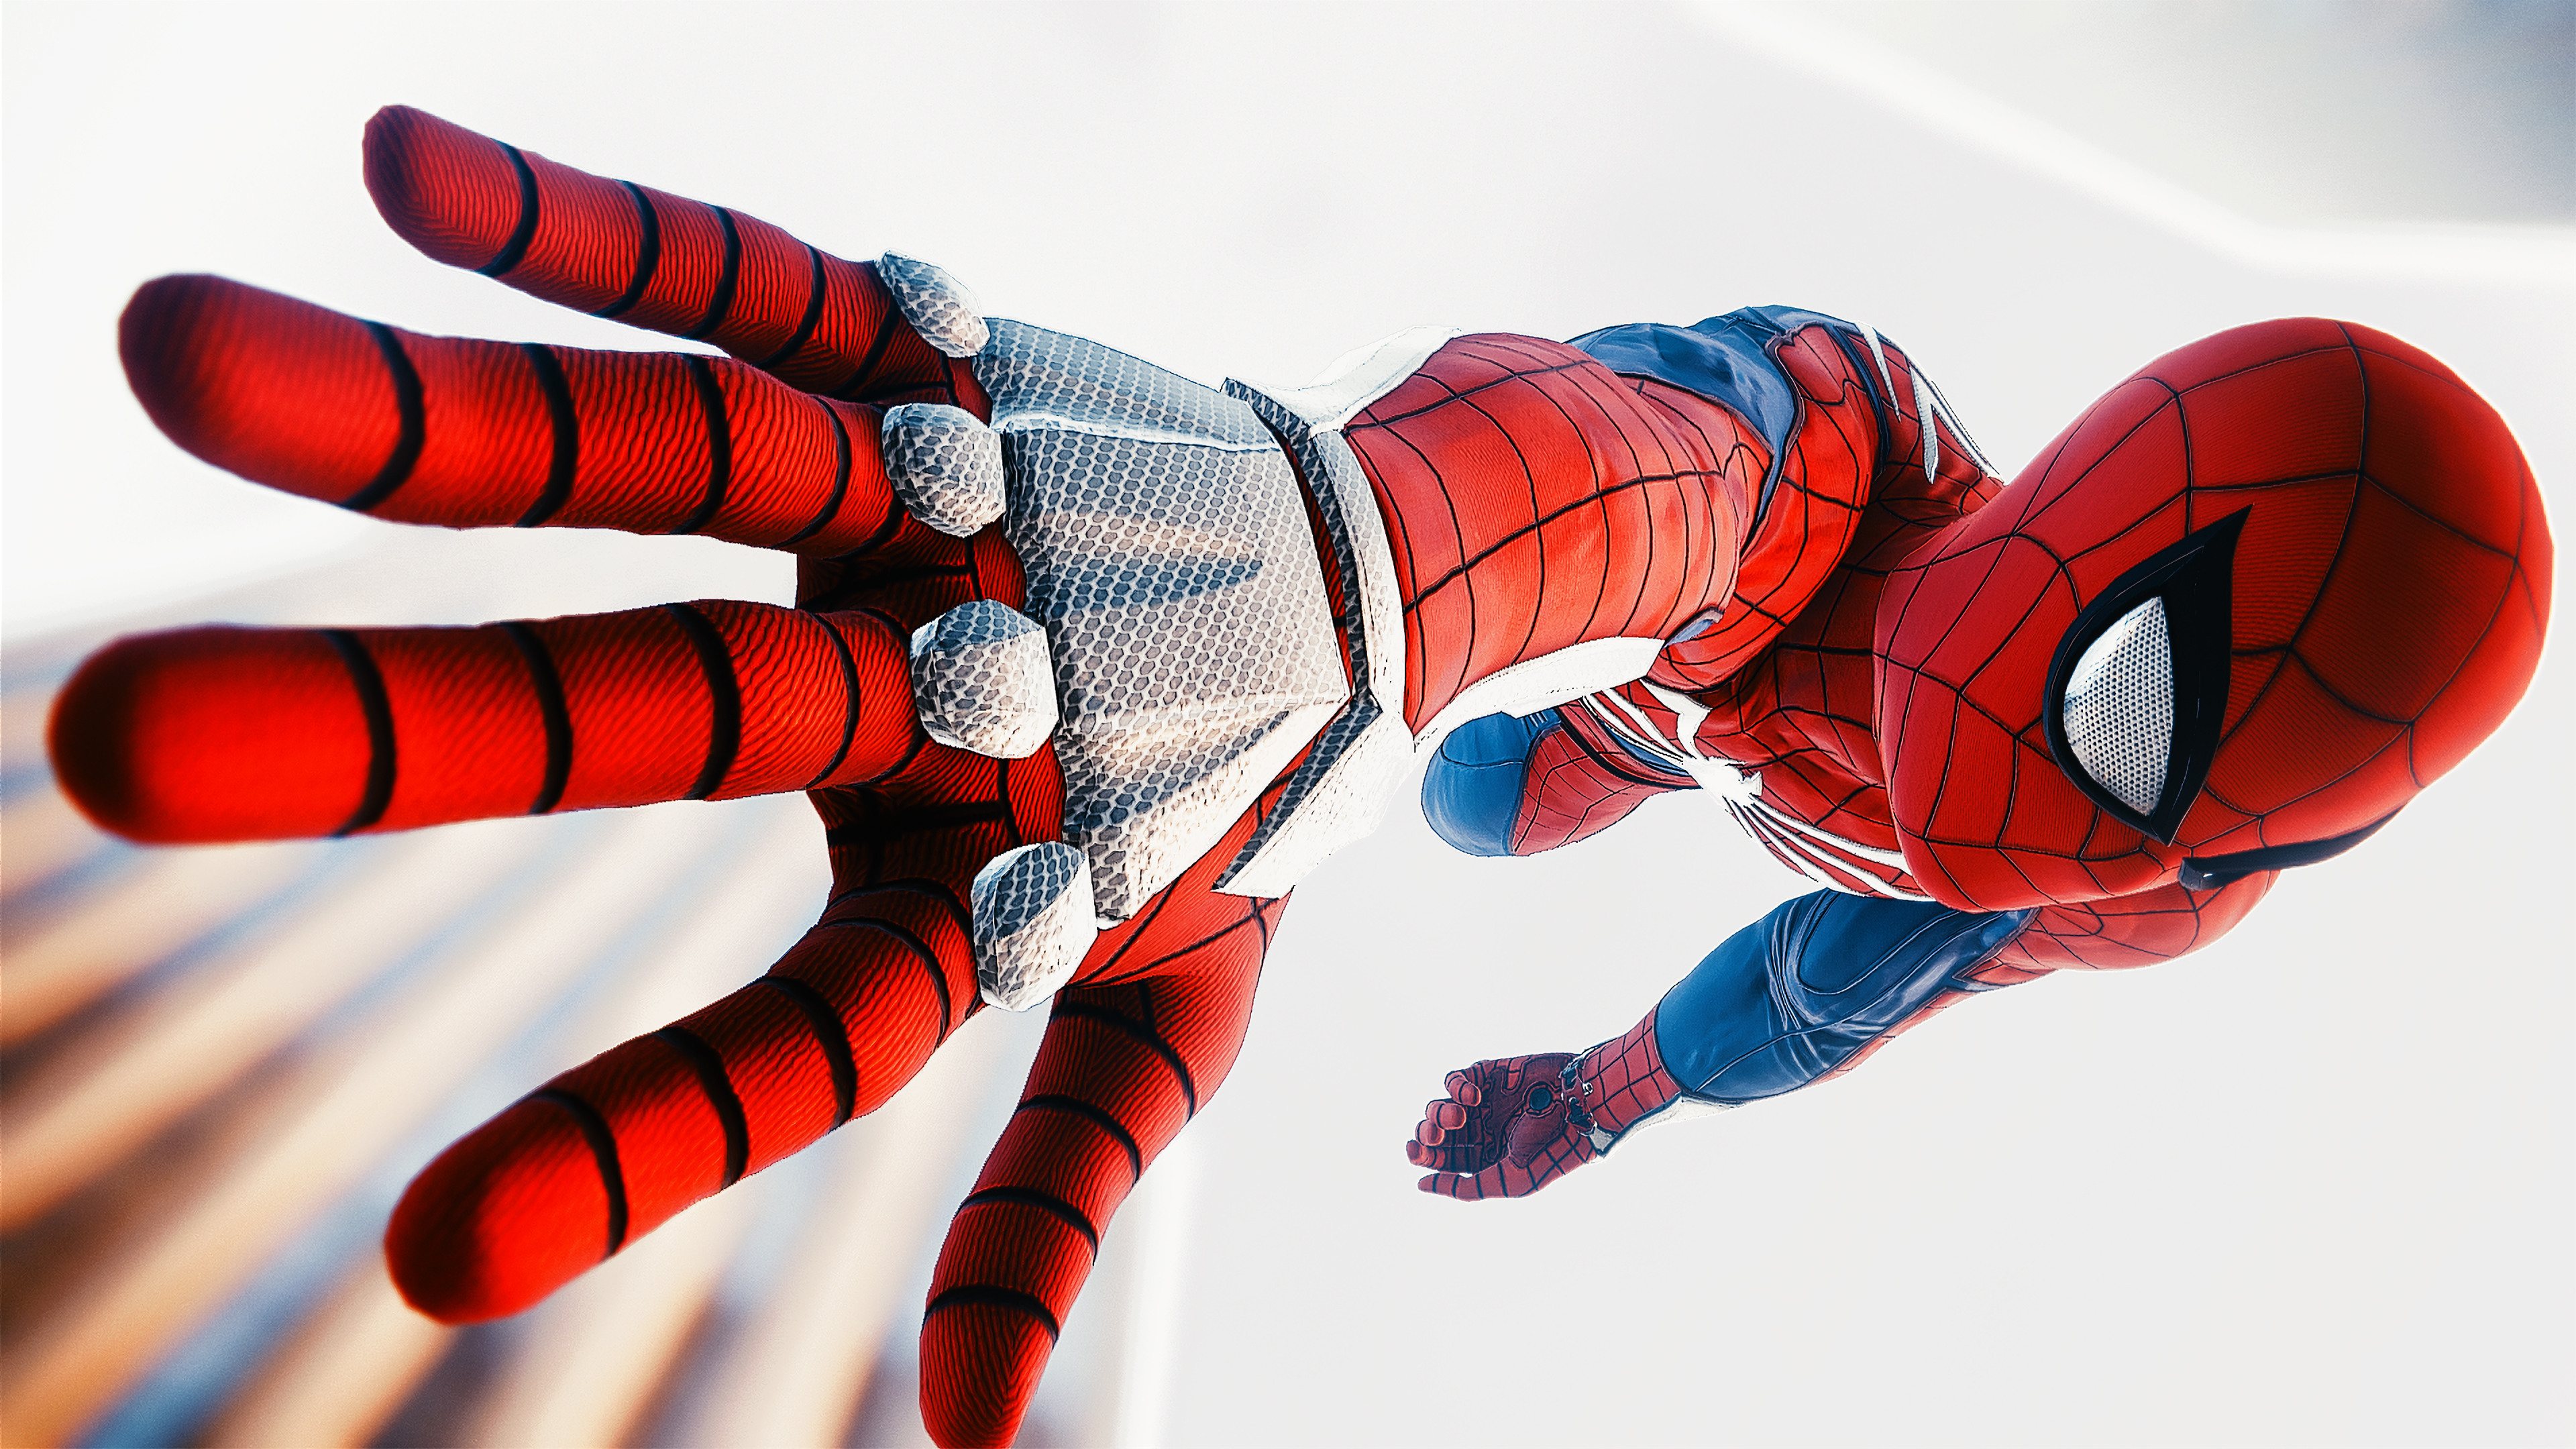 spiderman fondos de pantalla hd,hombre araña,personaje de ficción,superhéroe,mano,guante de bateo